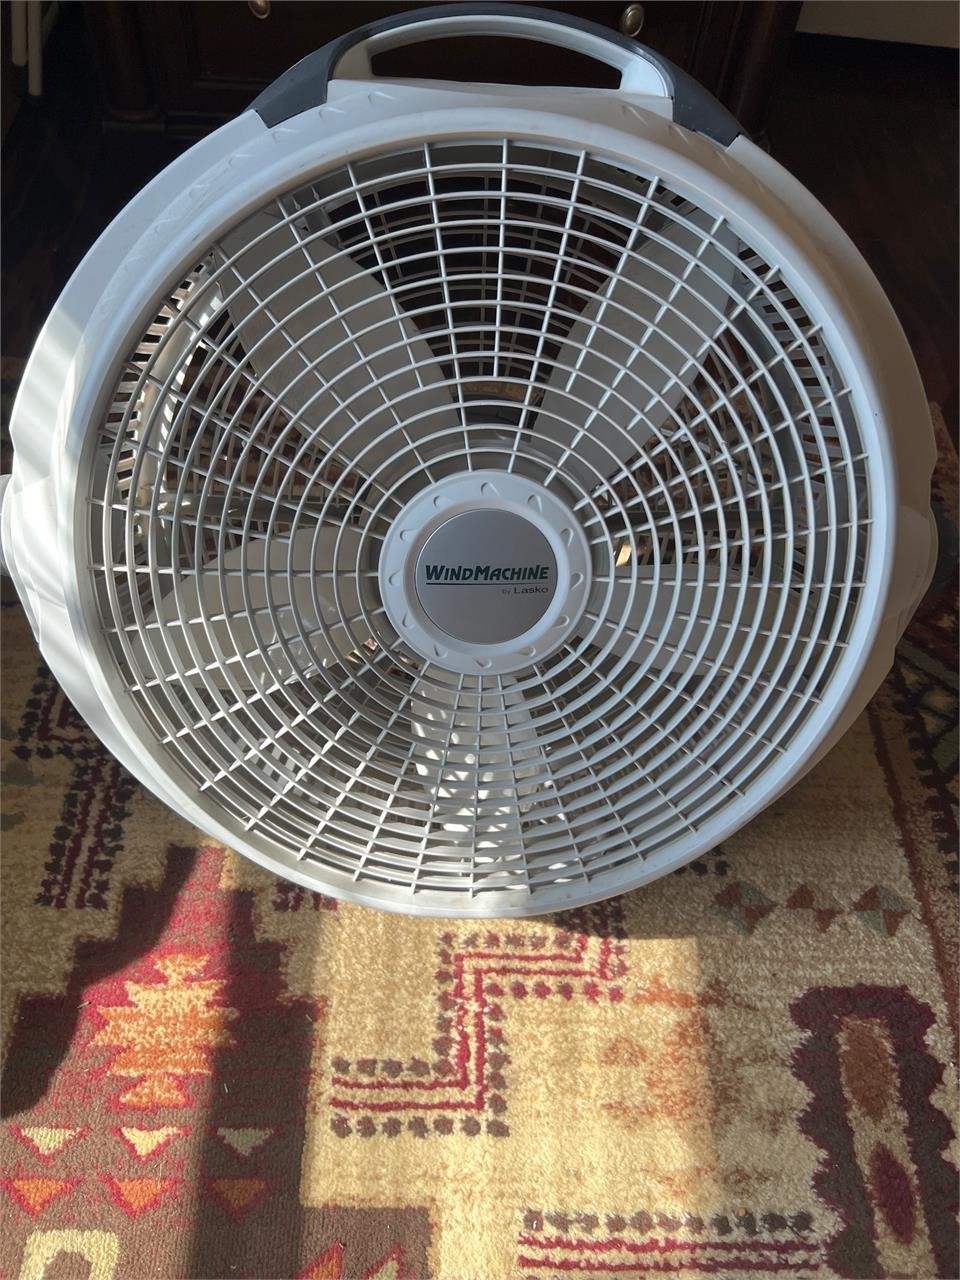 Lasko wind machine fan